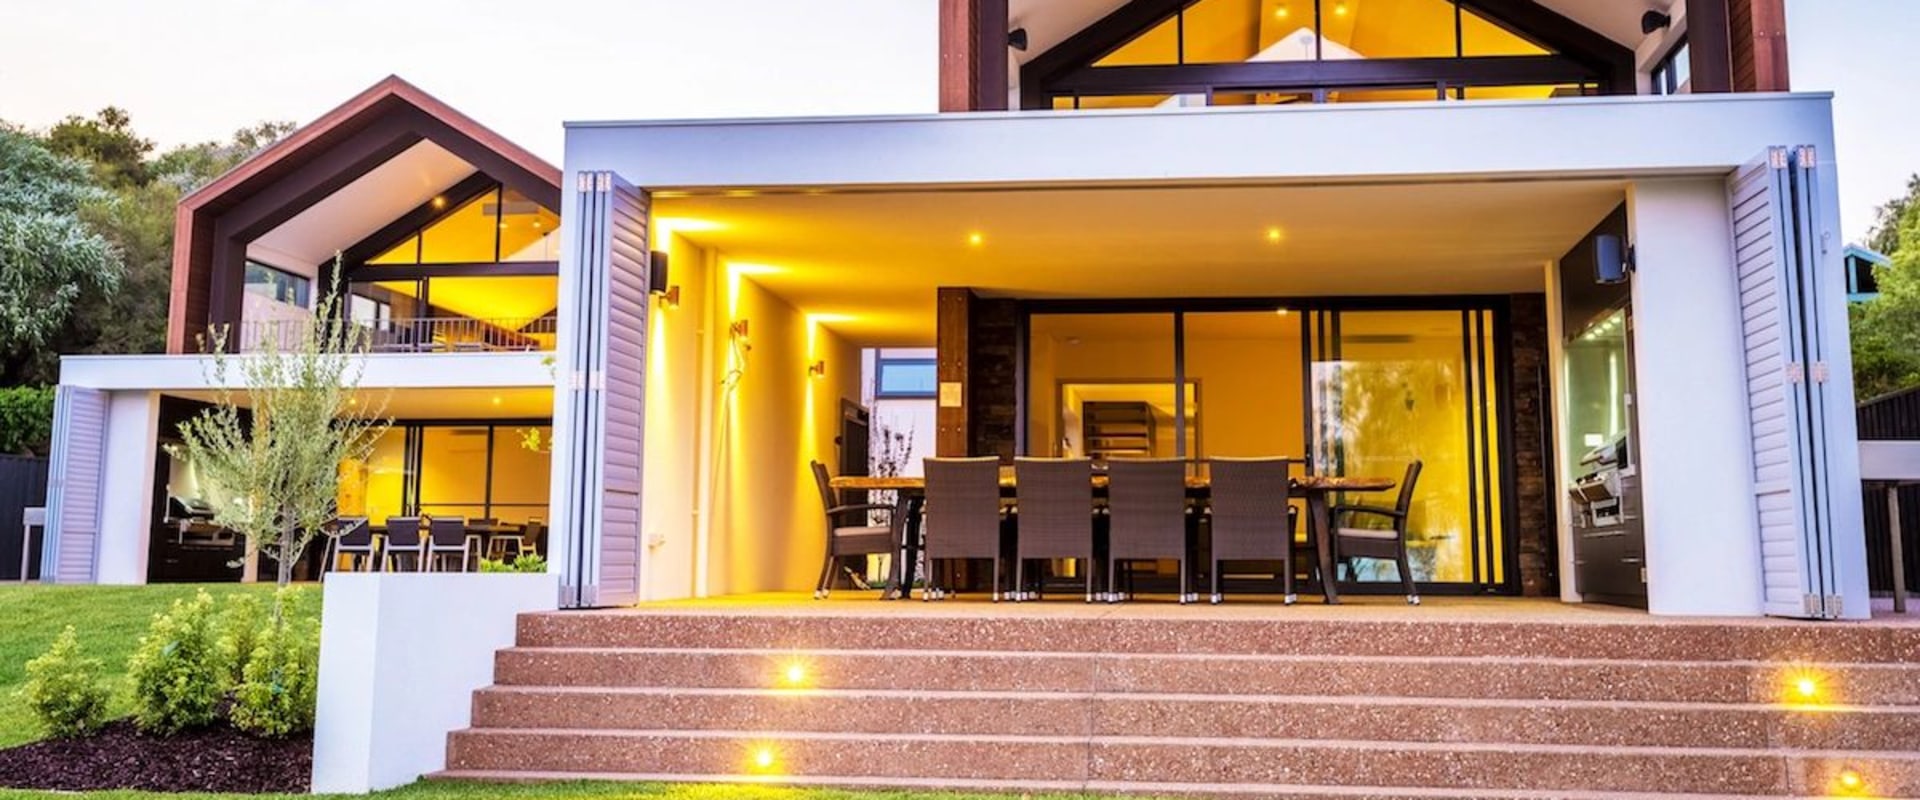 Custom Home Building: Transform Your House Into Your Dream Home